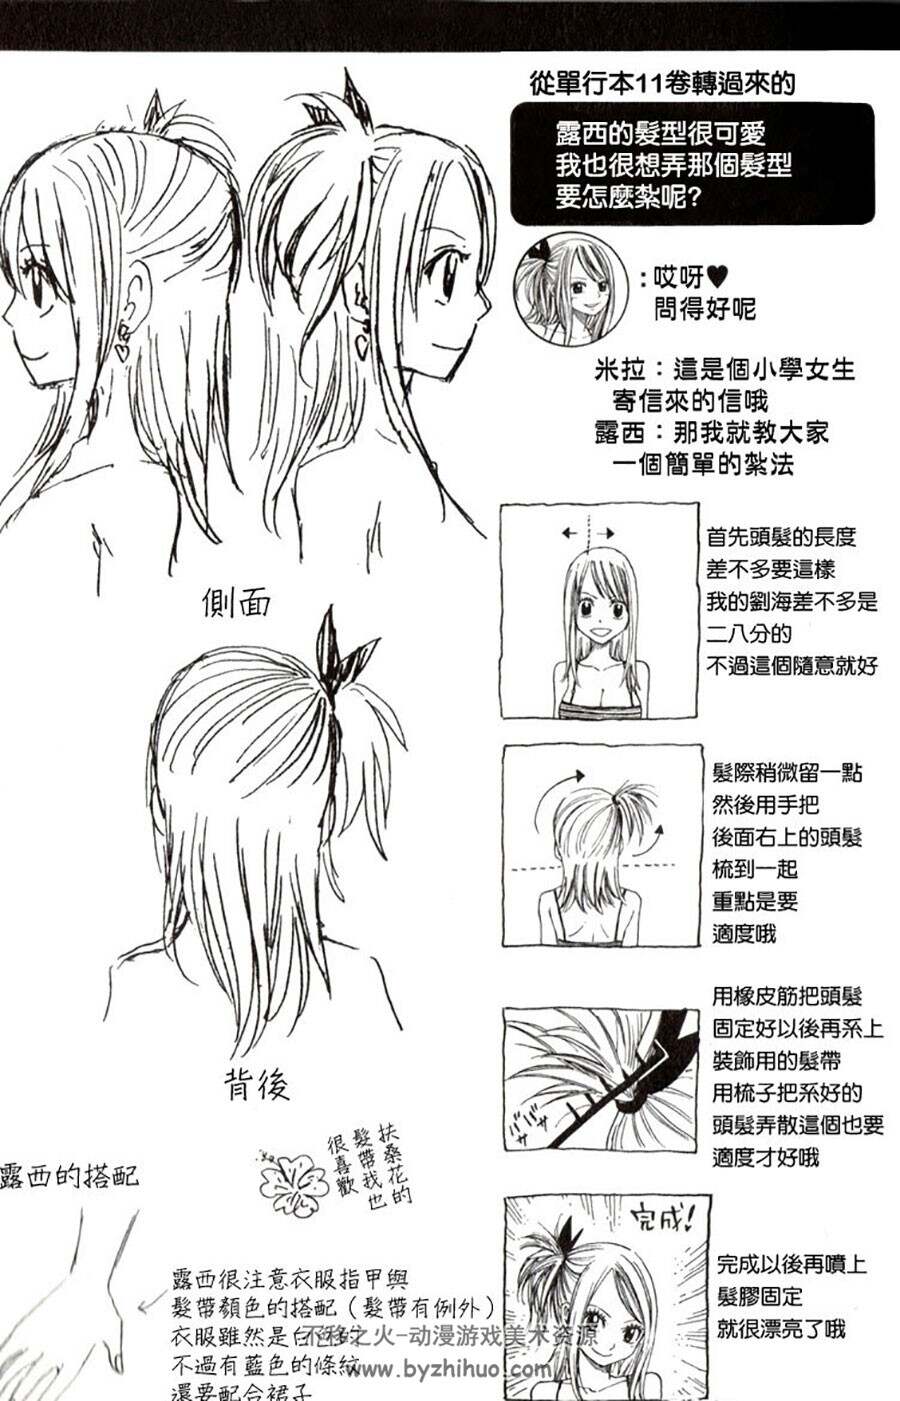 妖精的尾巴  漫画官方人物线稿设定资料画集 下载